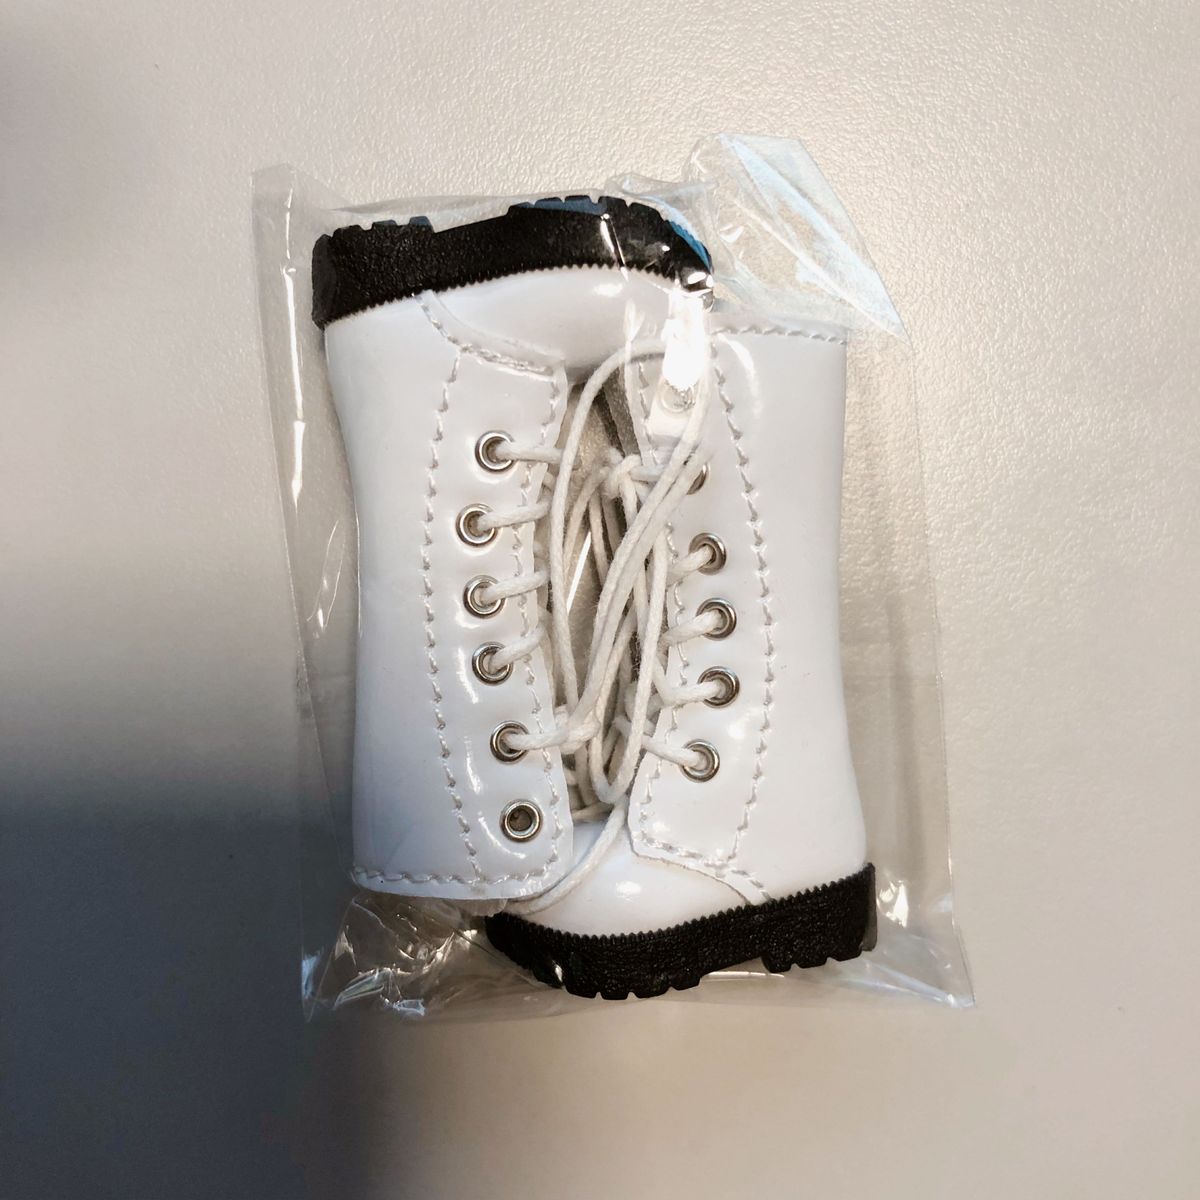 (ドーリア) ブライス 1/6ドール 靴 編み上げロングブーツ ホワイト 白色